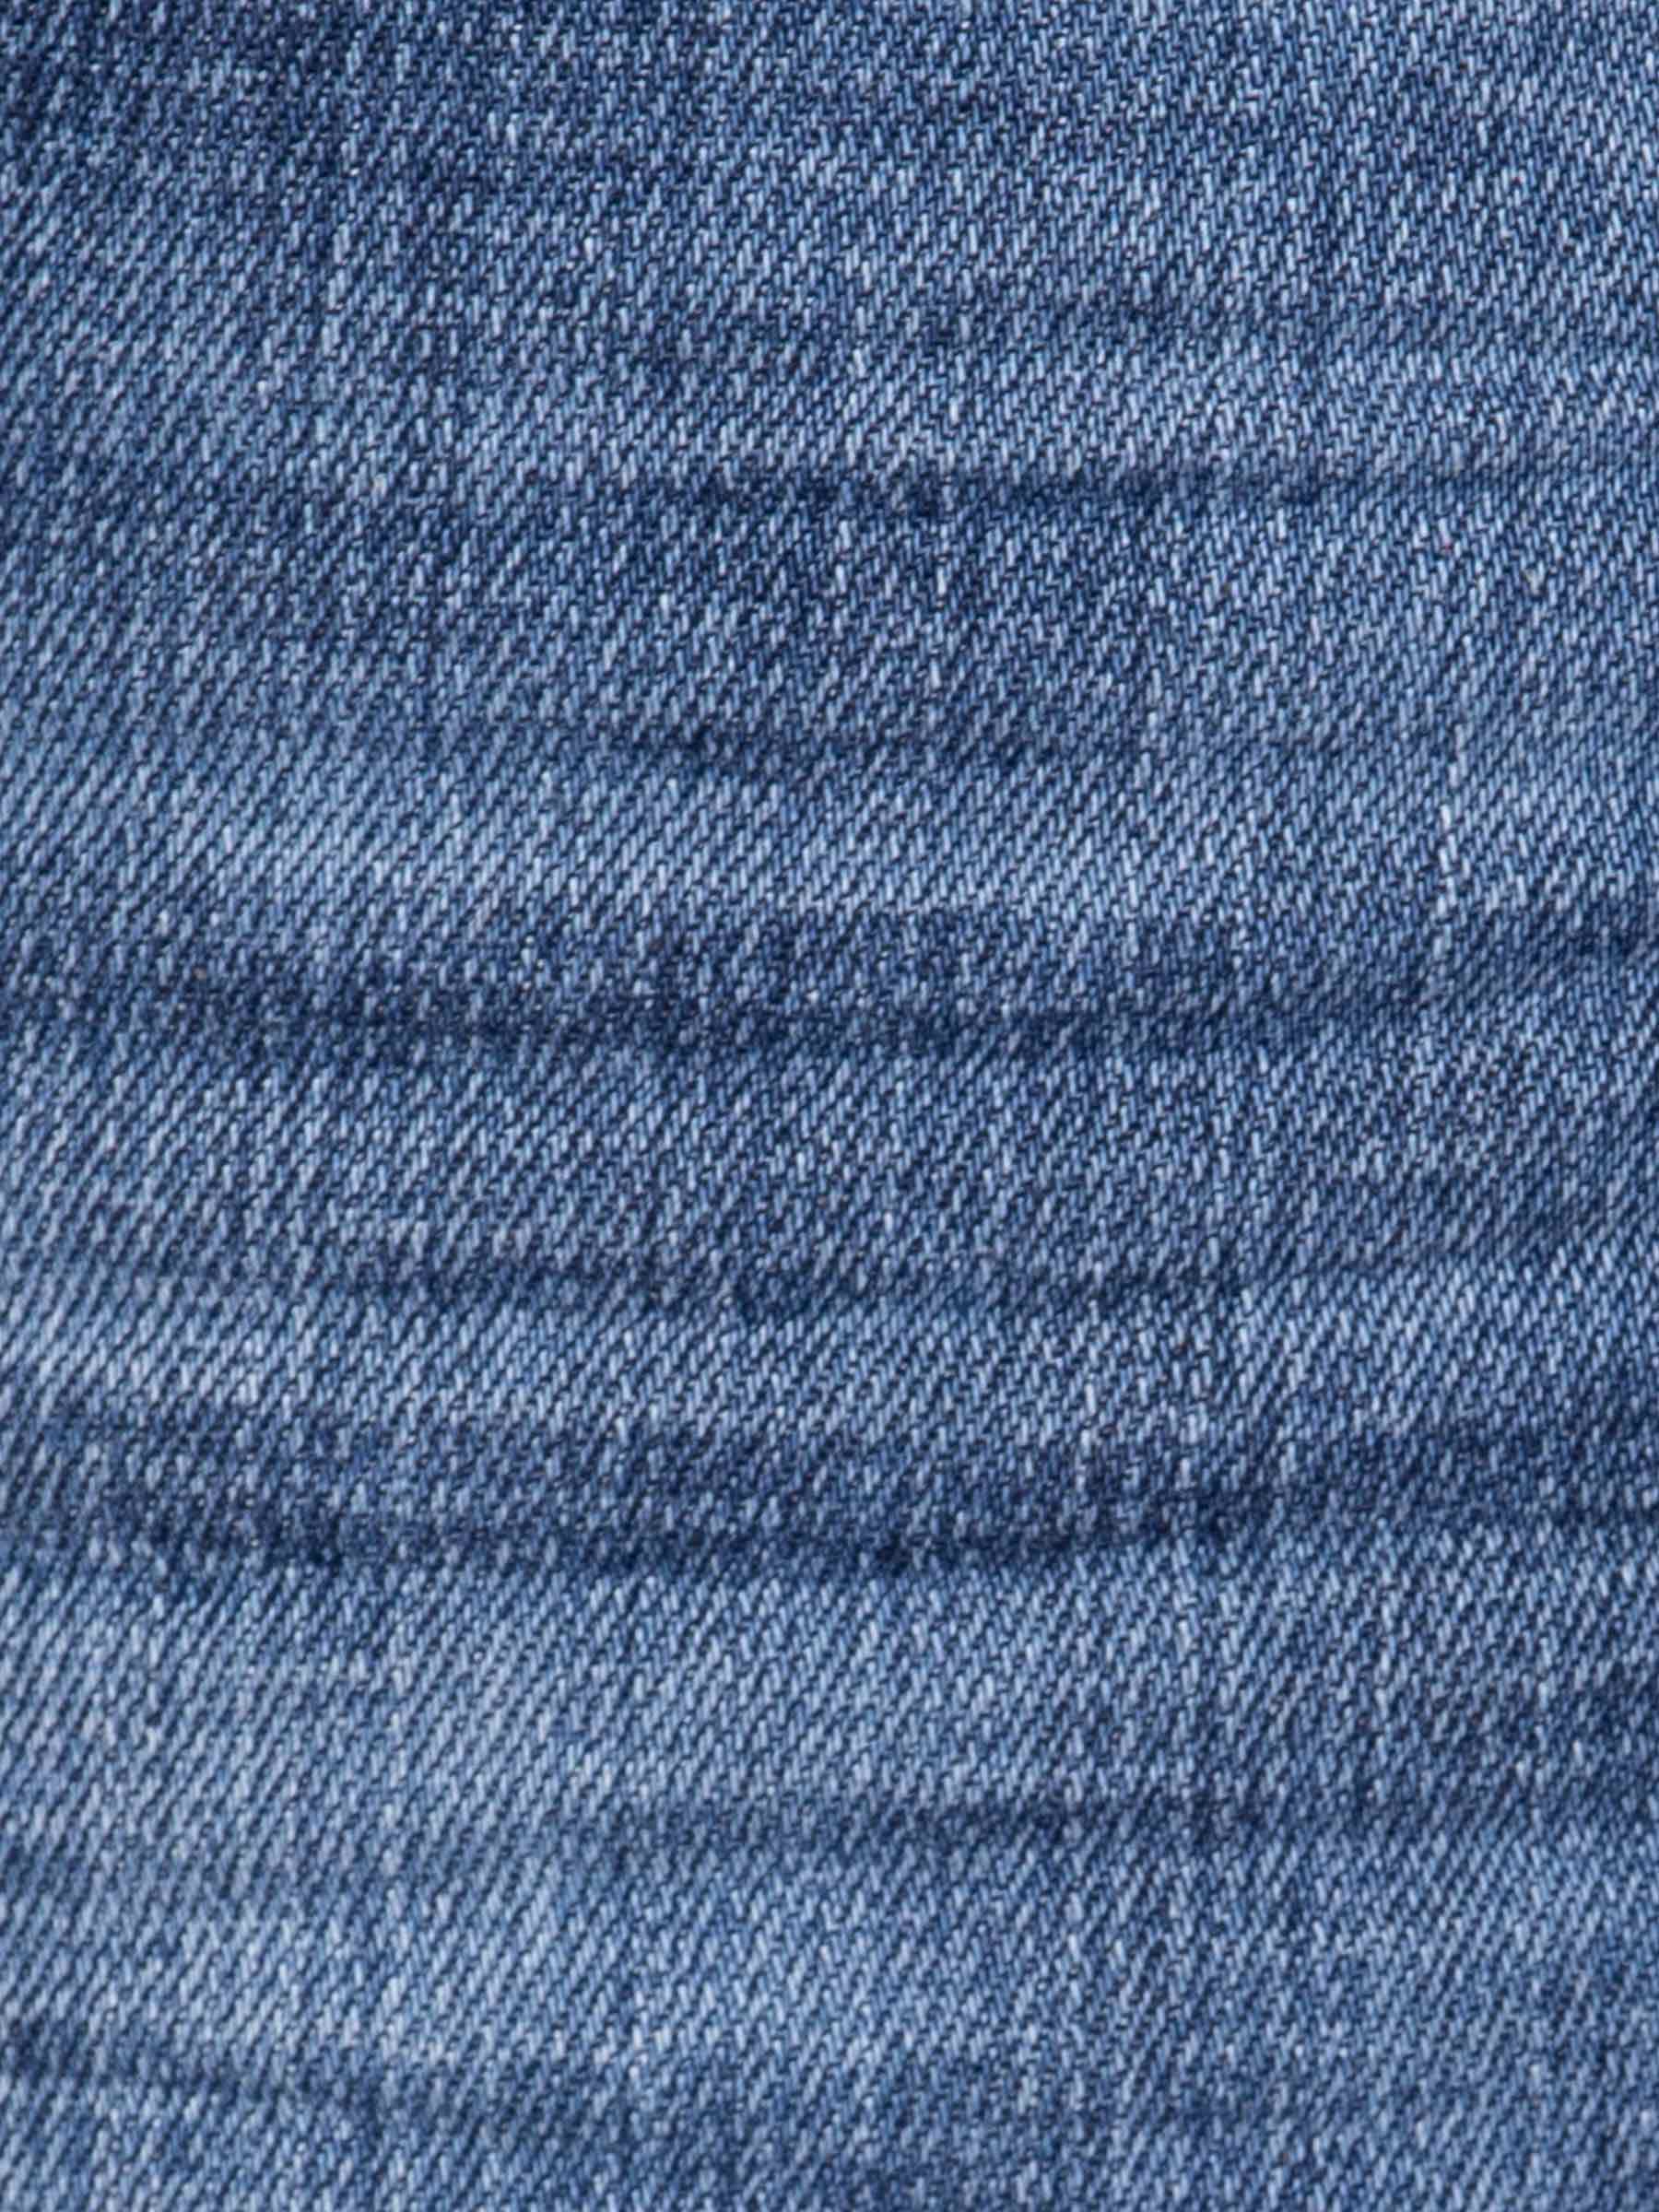 Jeans 72283 Fruges Blue